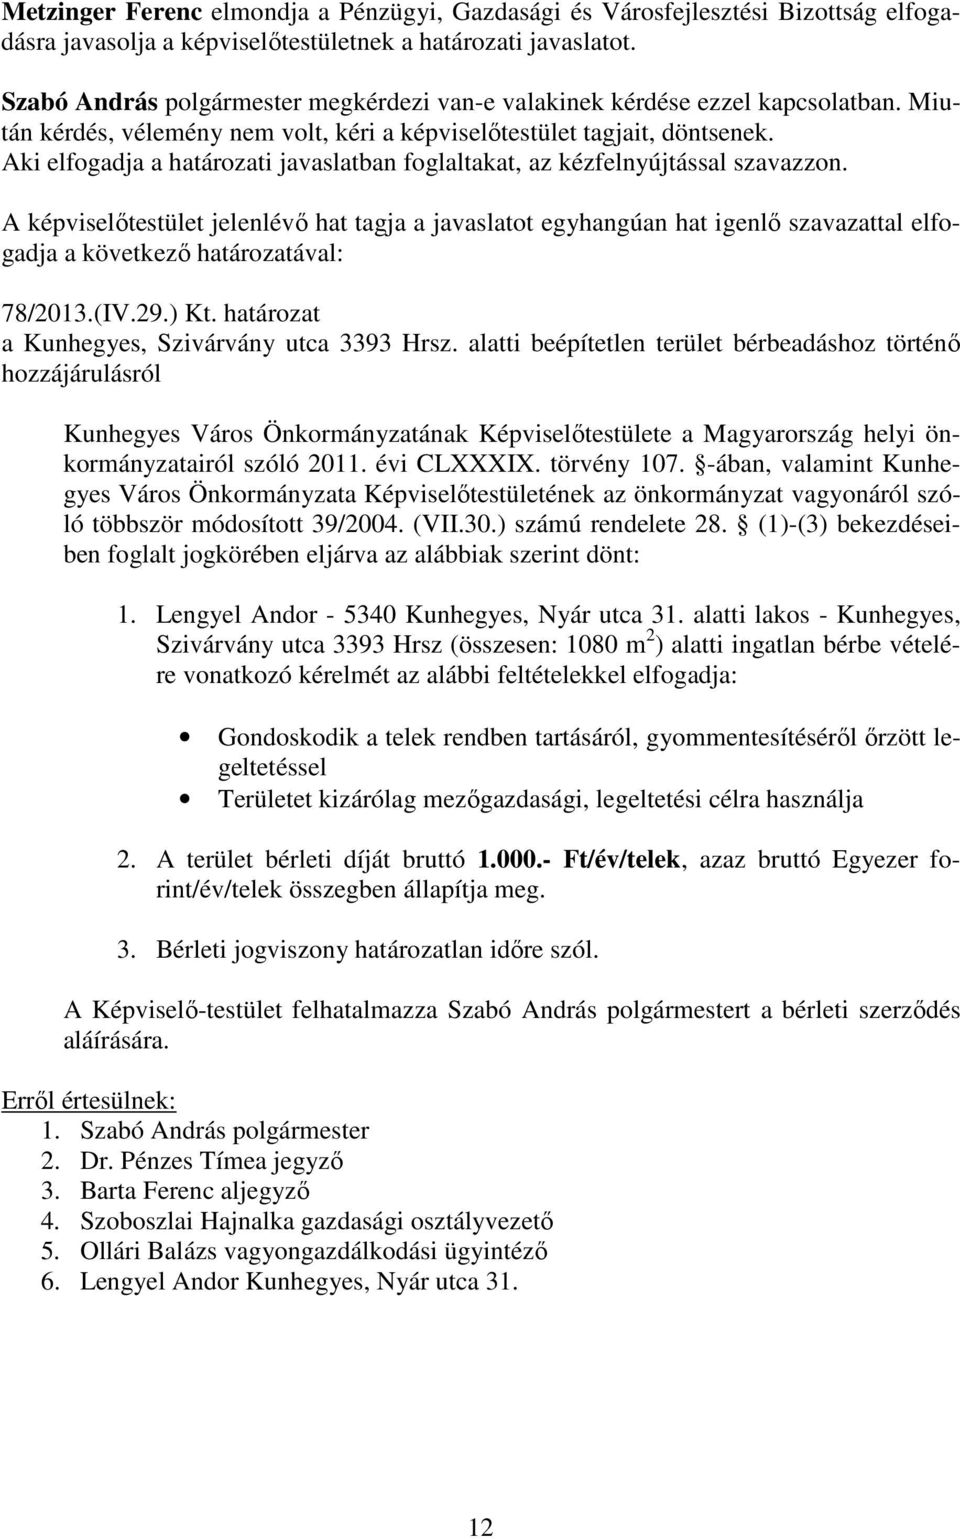 alatti beépítetlen terület bérbeadáshoz történő hozzájárulásról Kunhegyes Város Önkormányzatának Képviselőtestülete a Magyarország helyi önkormányzatairól szóló 2011. évi CLXXXIX. törvény 107.